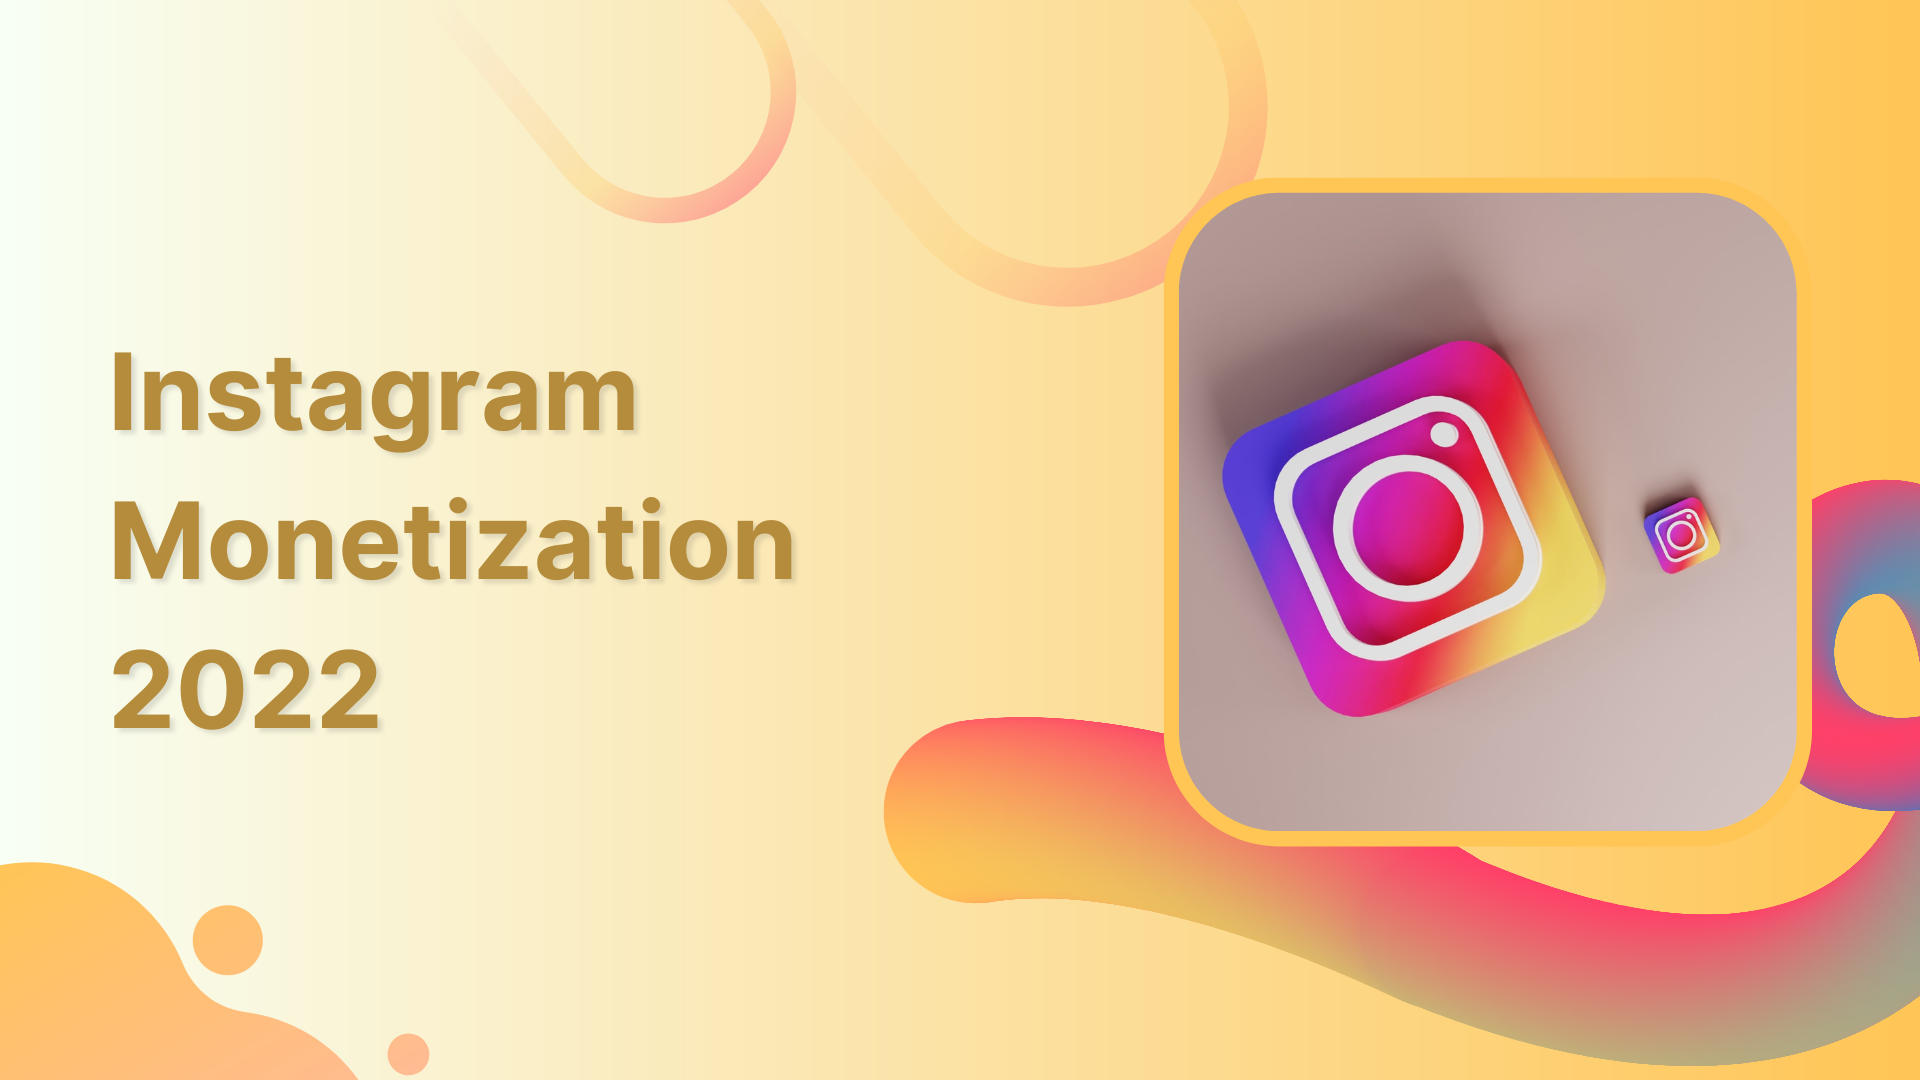 Instagram Monetization: Make Money with Instagram in 2022